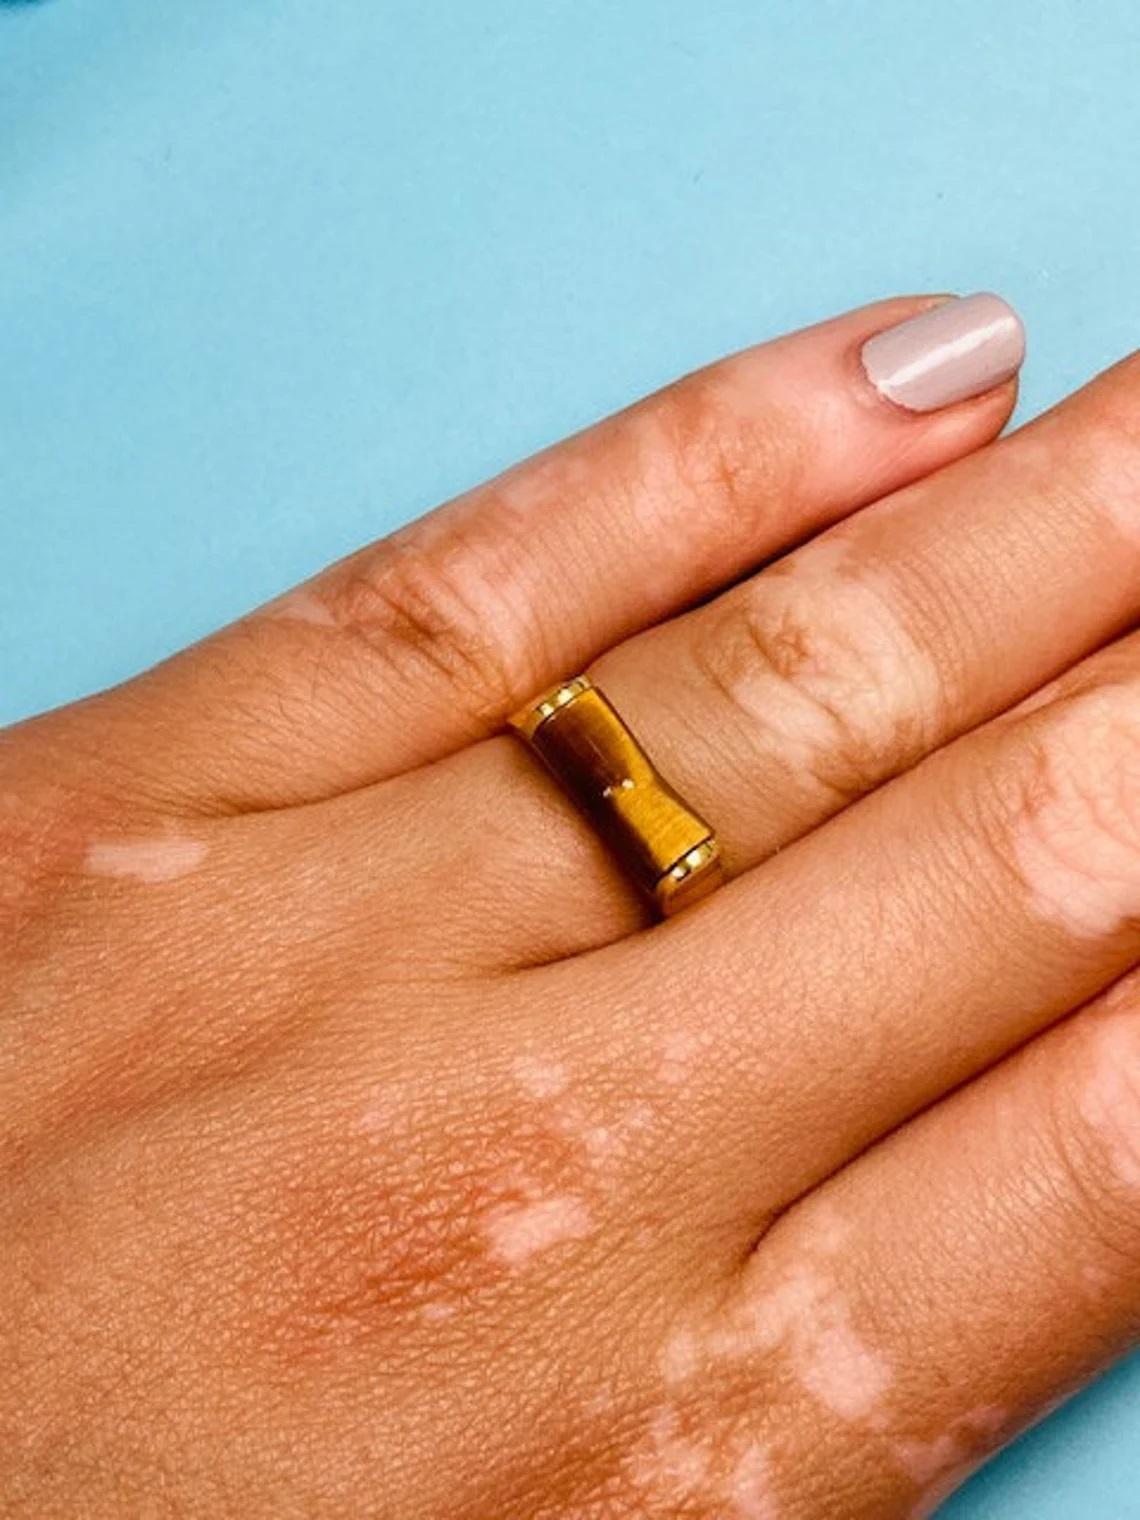 Vintage 14k Gold Tiger's Eye Chevron Ring One-of-a-kind

Dieser Goldring im Vintage-Stil mit einzigartigem Tigeraugen-Design ist das perfekte Accessoire für jeden Look. Das kaleidoskopische Tigerauge hat einen coolen Effekt und dieser einmalige Ring